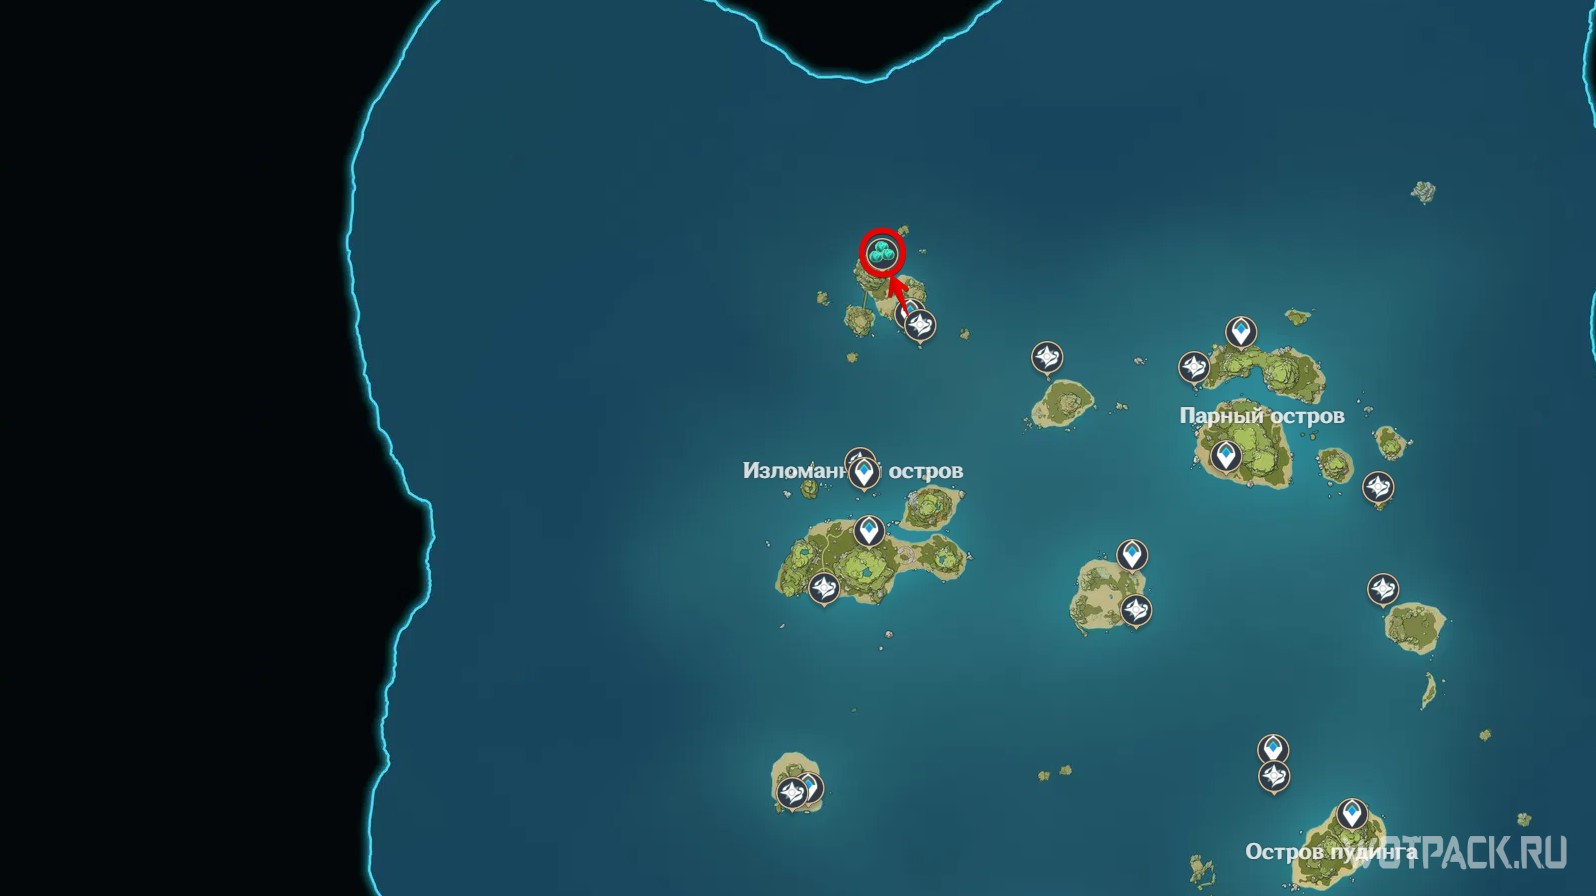 Квесты архипелаг. Золотой архипелаг. Архипелаг 2.8. Загадка лунного архипелага. Остров Кадзухи в архипелаге.